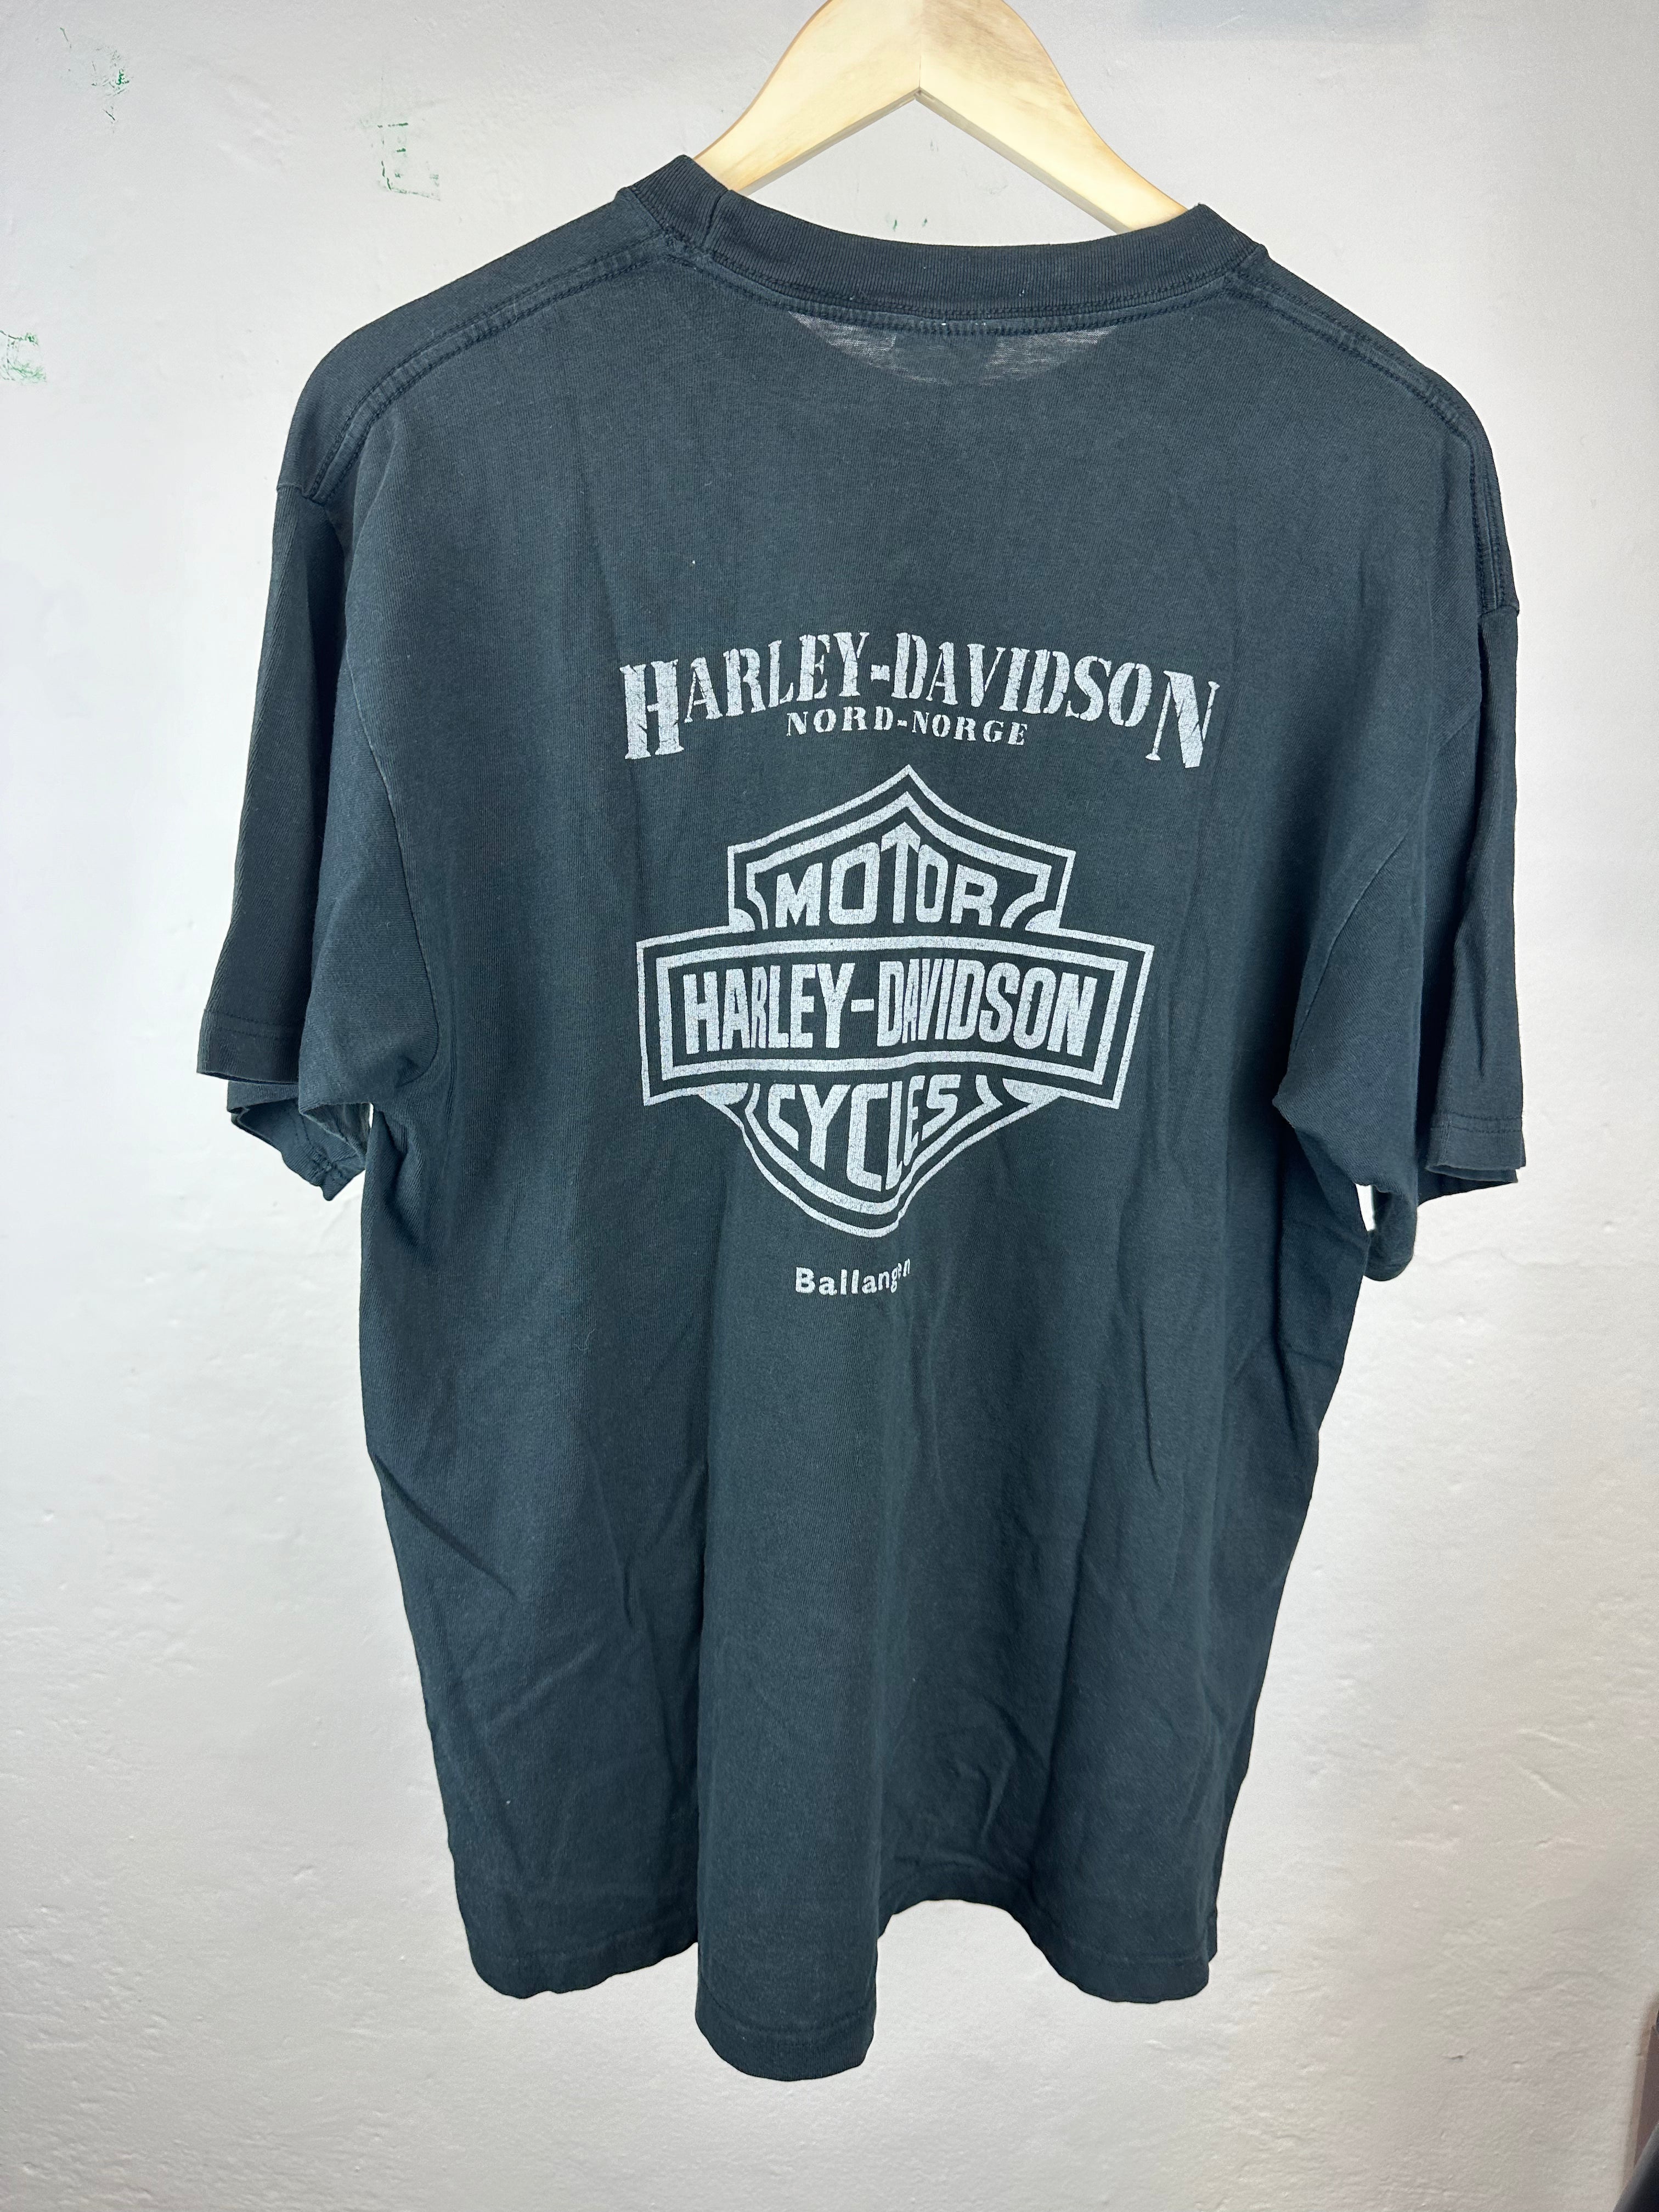 Vintage Harley Davidson "Owners Group" t-shirt - size L